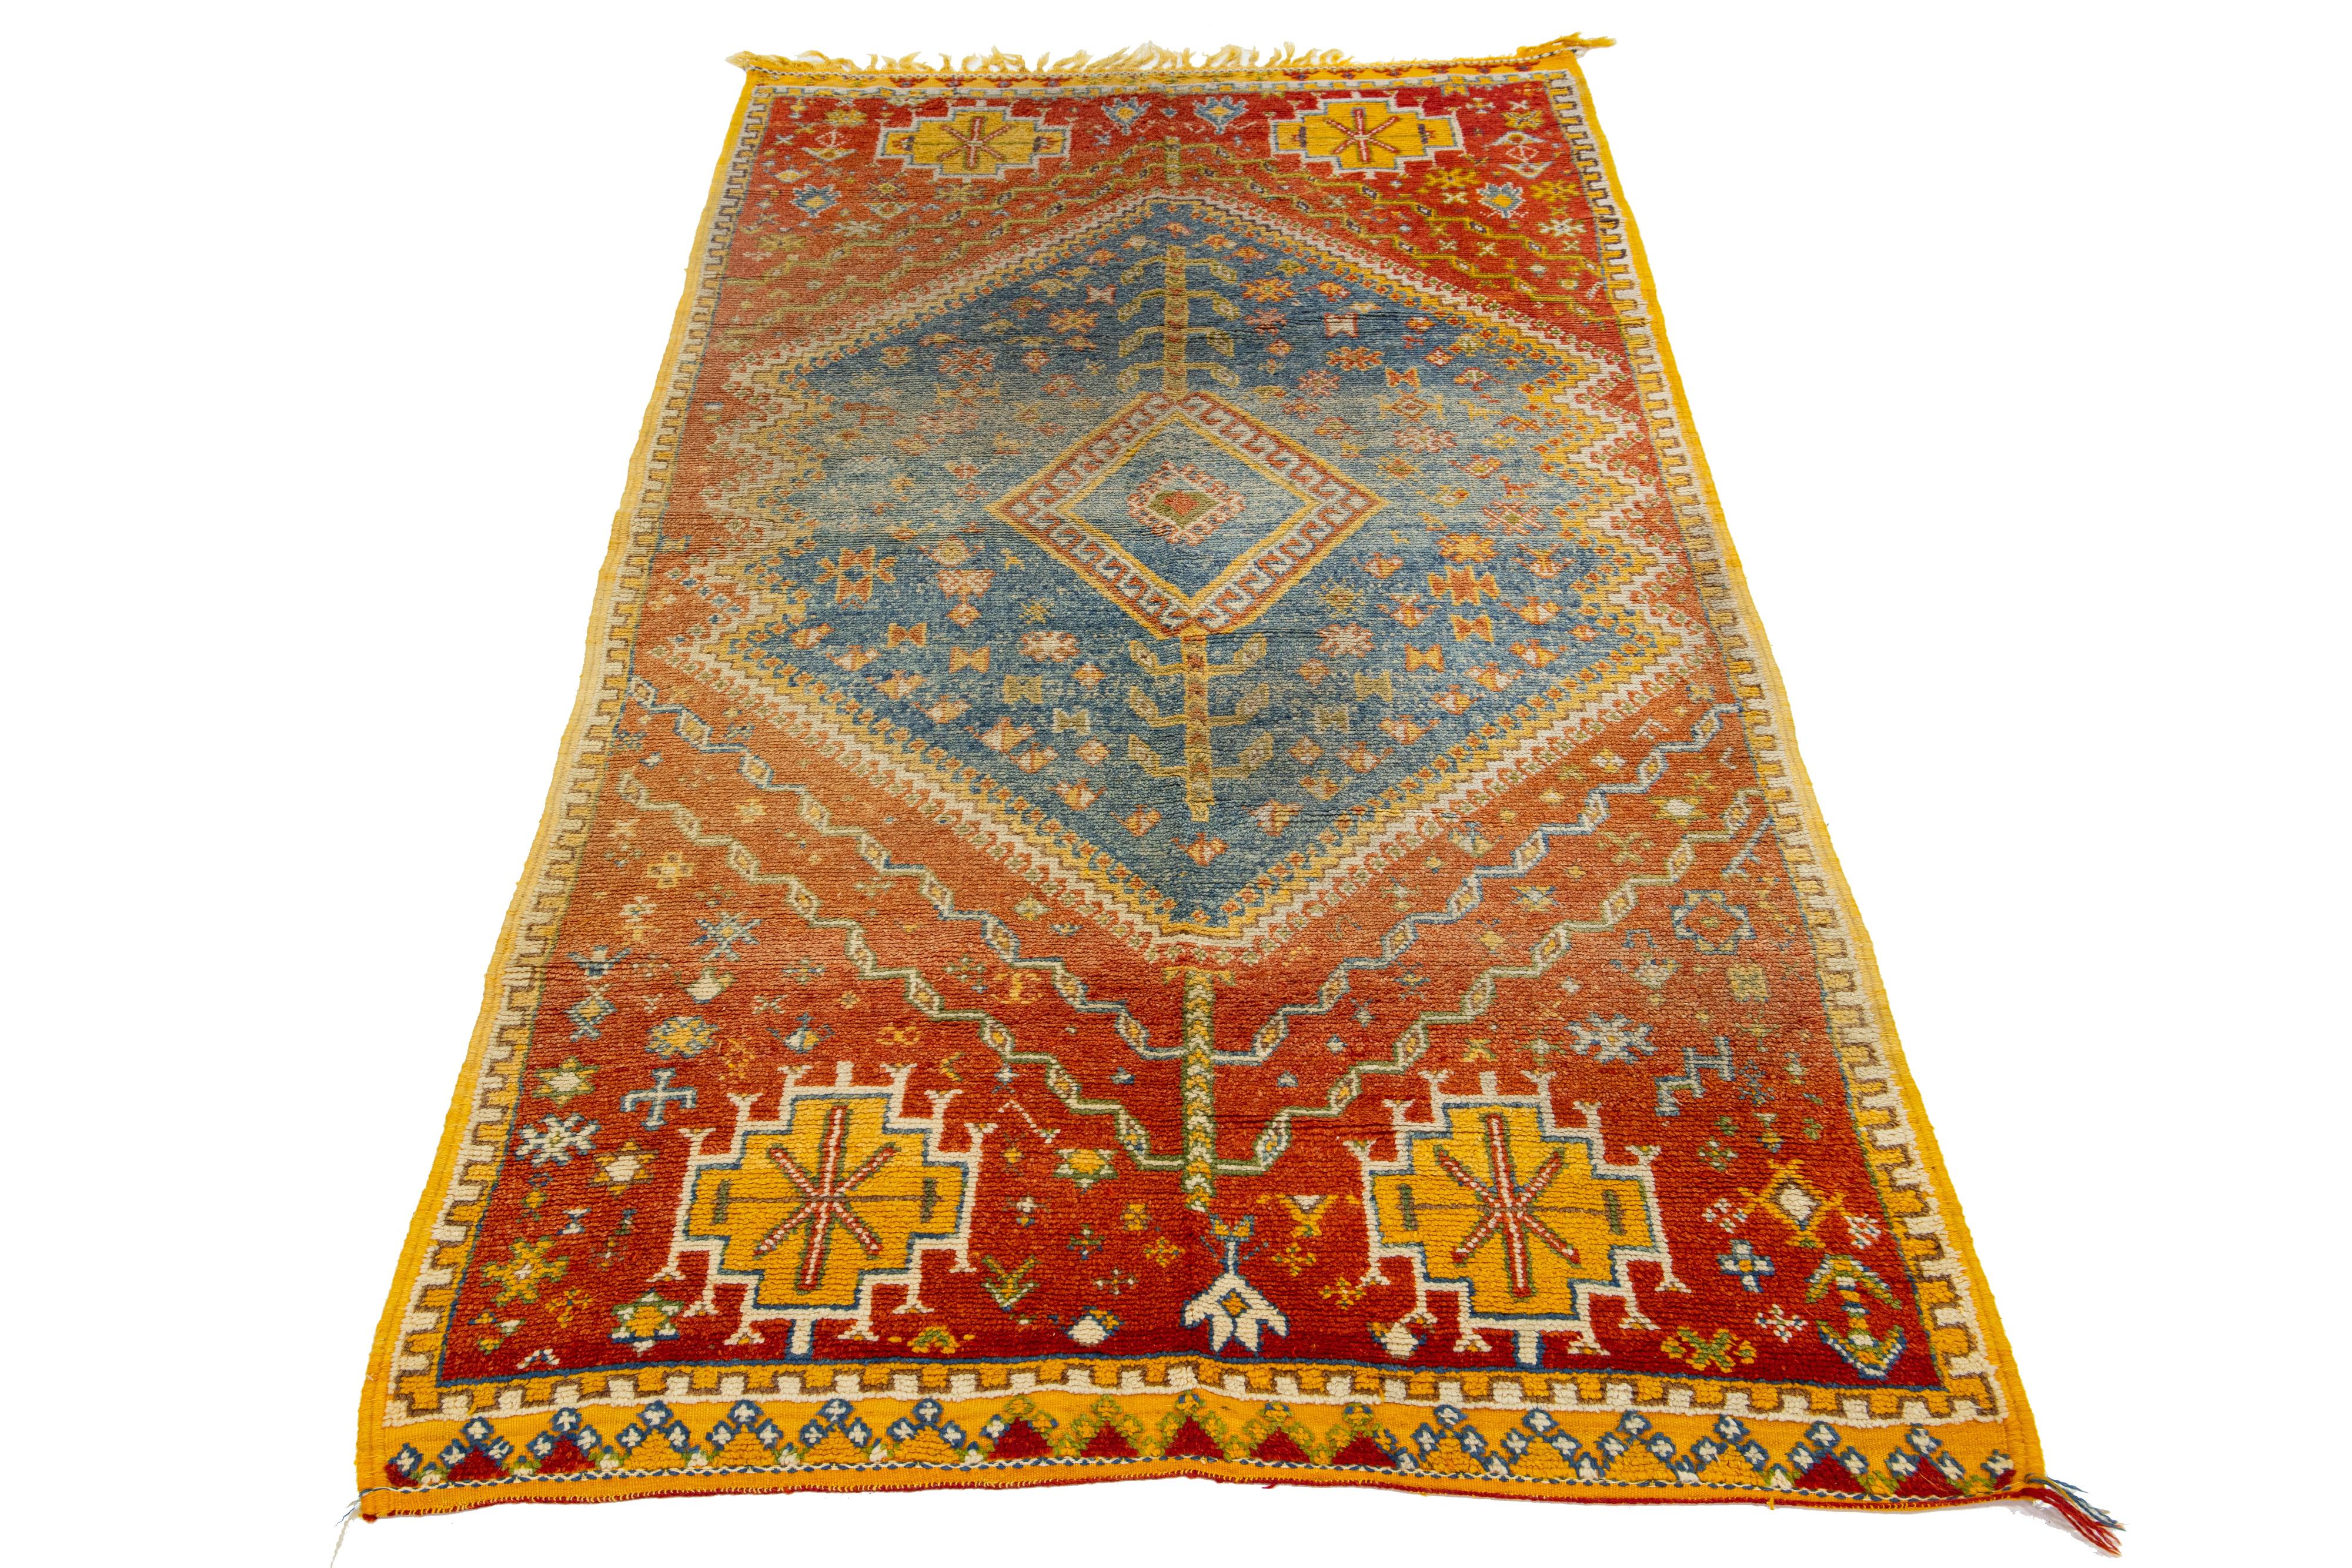 Magnifique tapis ancien en laine orange, noué à la main, de style persan marocain, avec un motif géométrique en forme de médaillon. Cette pièce présente des détails raffinés, de belles couleurs et un design magnifique.

Ce tapis mesure 4'7